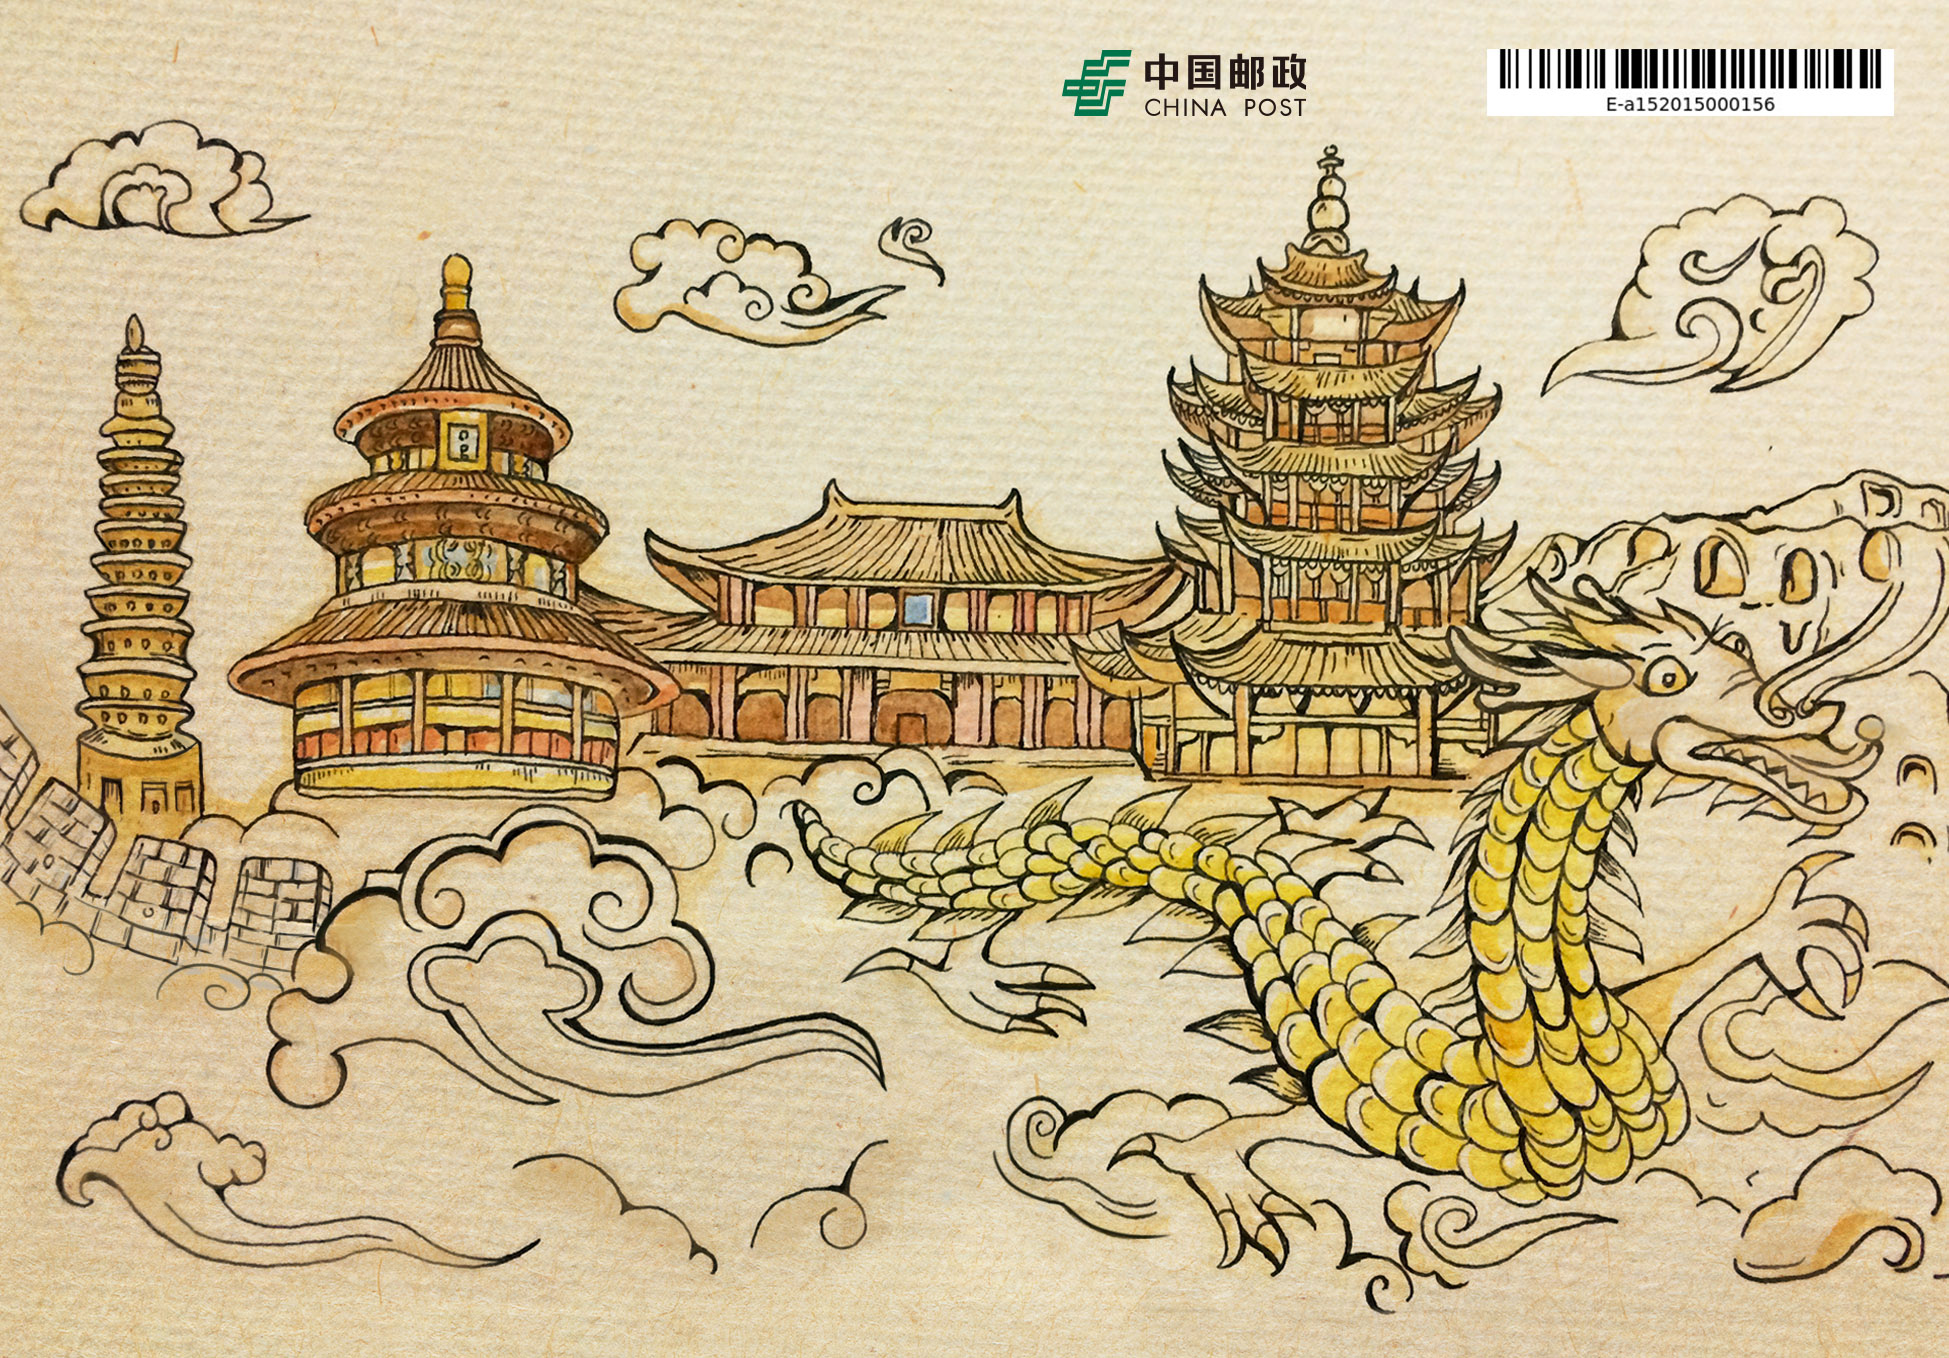 具有中国特色的手绘淡彩明信片,我搜集了许多中国代表性建筑的资料